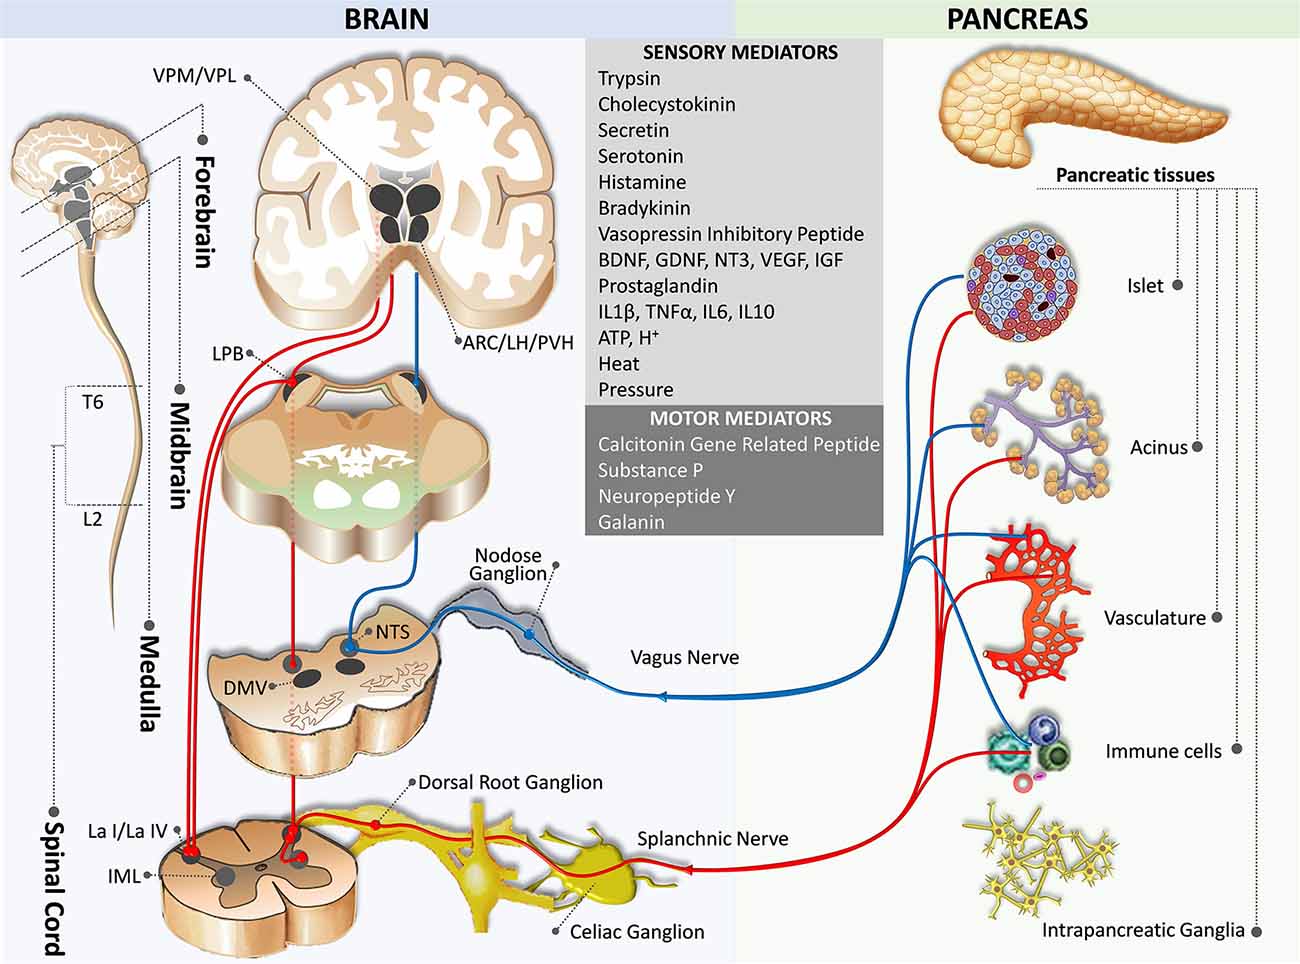 Frontiers | Pancreas-Brain Crosstalk | Frontiers in Neuroanatomy